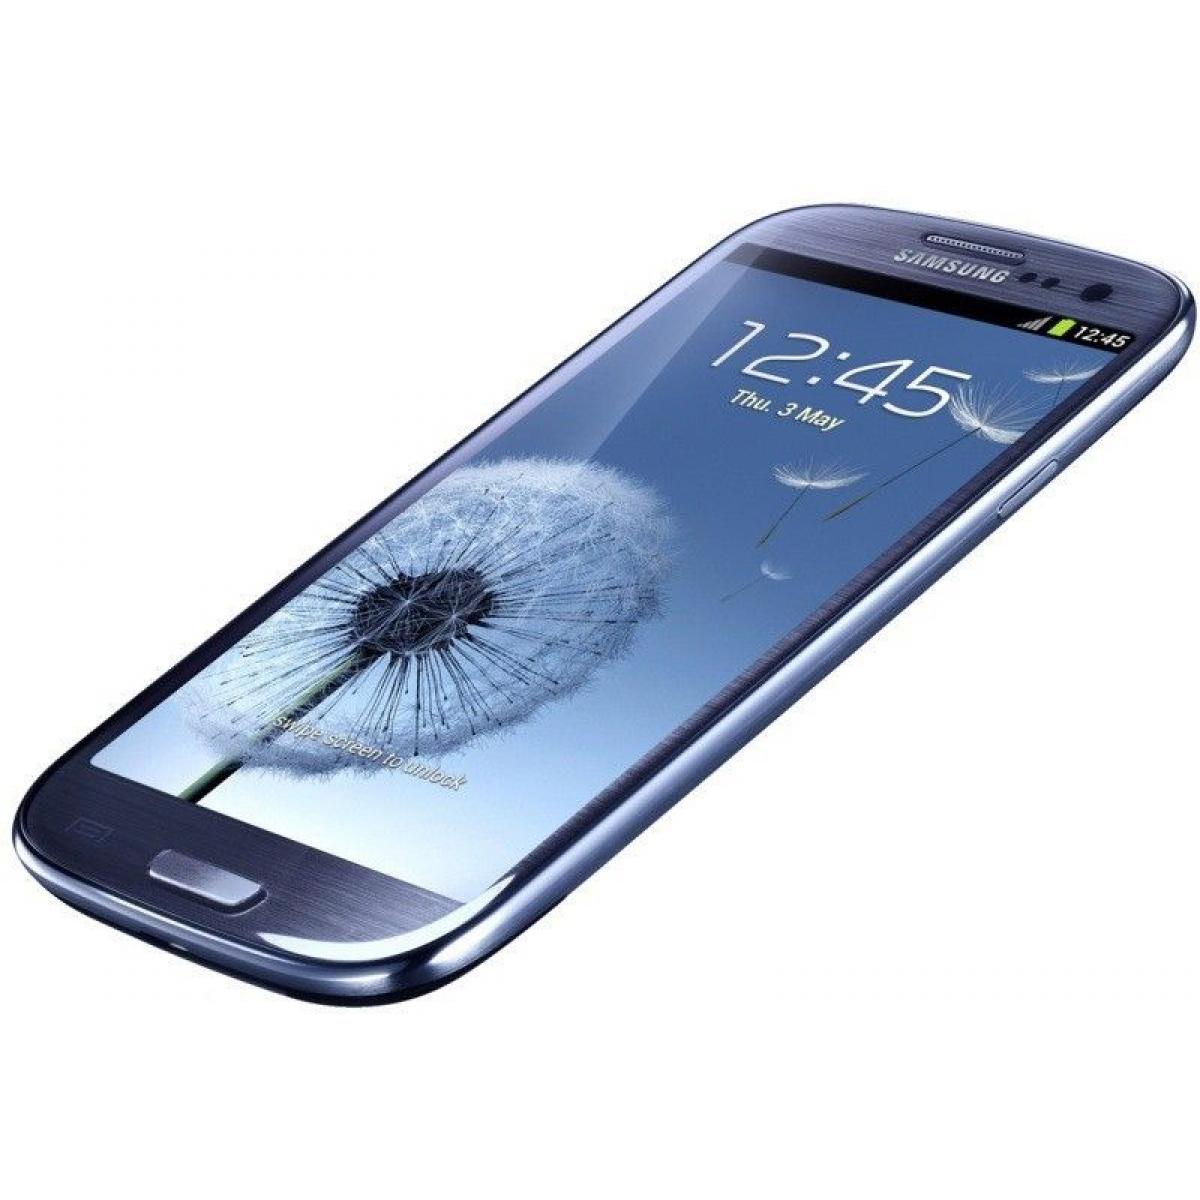 Samsung Galaxy i9300